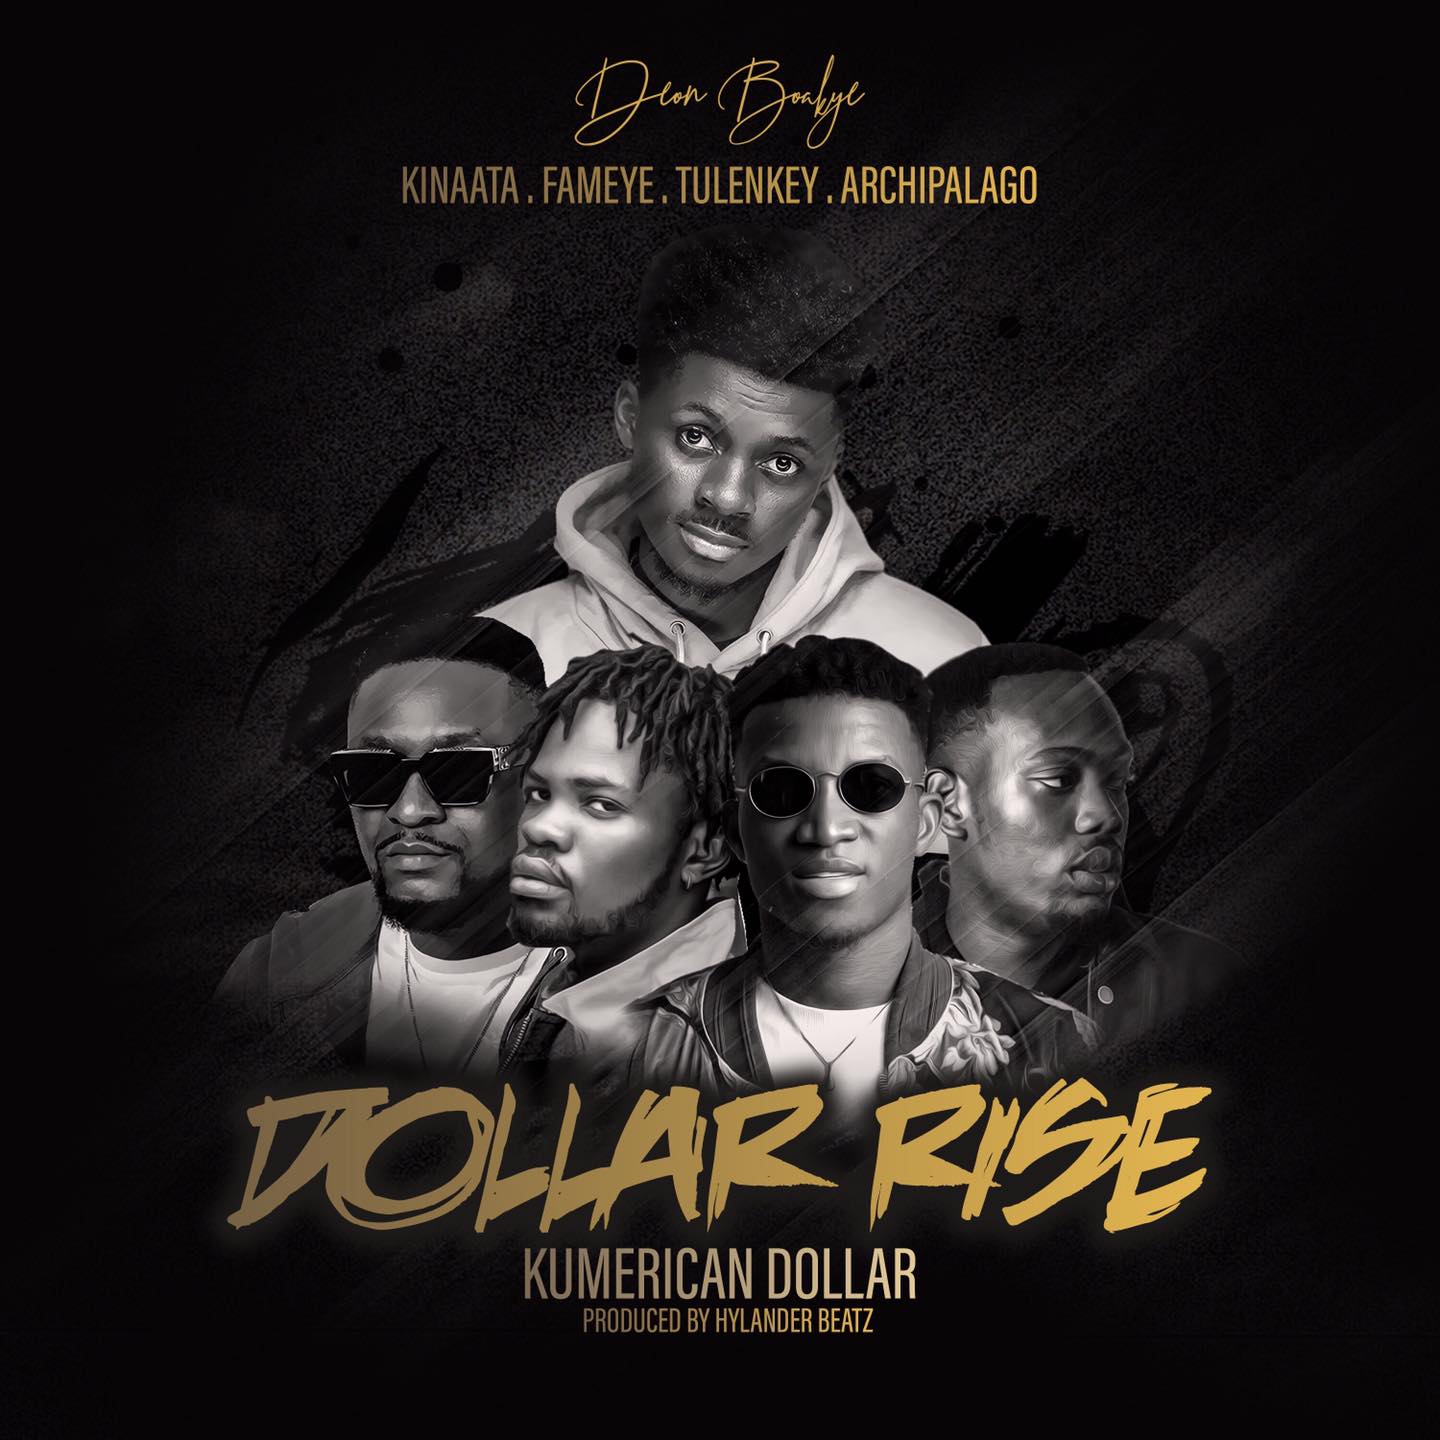 Deon Boakye - Dollar Rise (Kumerican Dollar) Ft. Kofi Kinaata , Fameye, Tulenkey x Archipalago